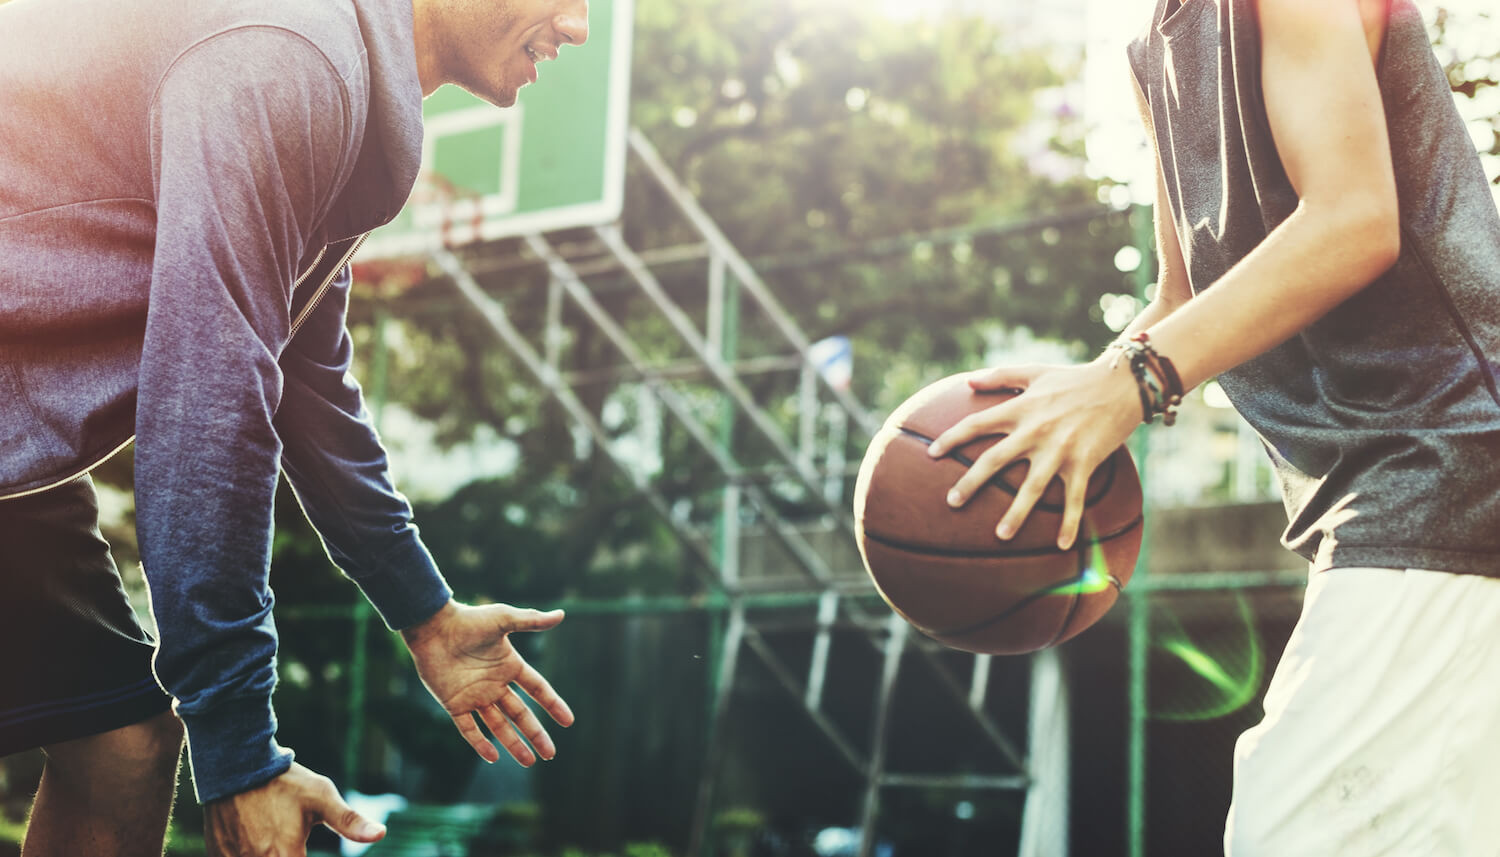 Zdrowy i aktywny styl życia. Dwaj mężczyzni grają w koszykówkę. Mężczyzna po prawej stronie trzyma w rękach piłkę.